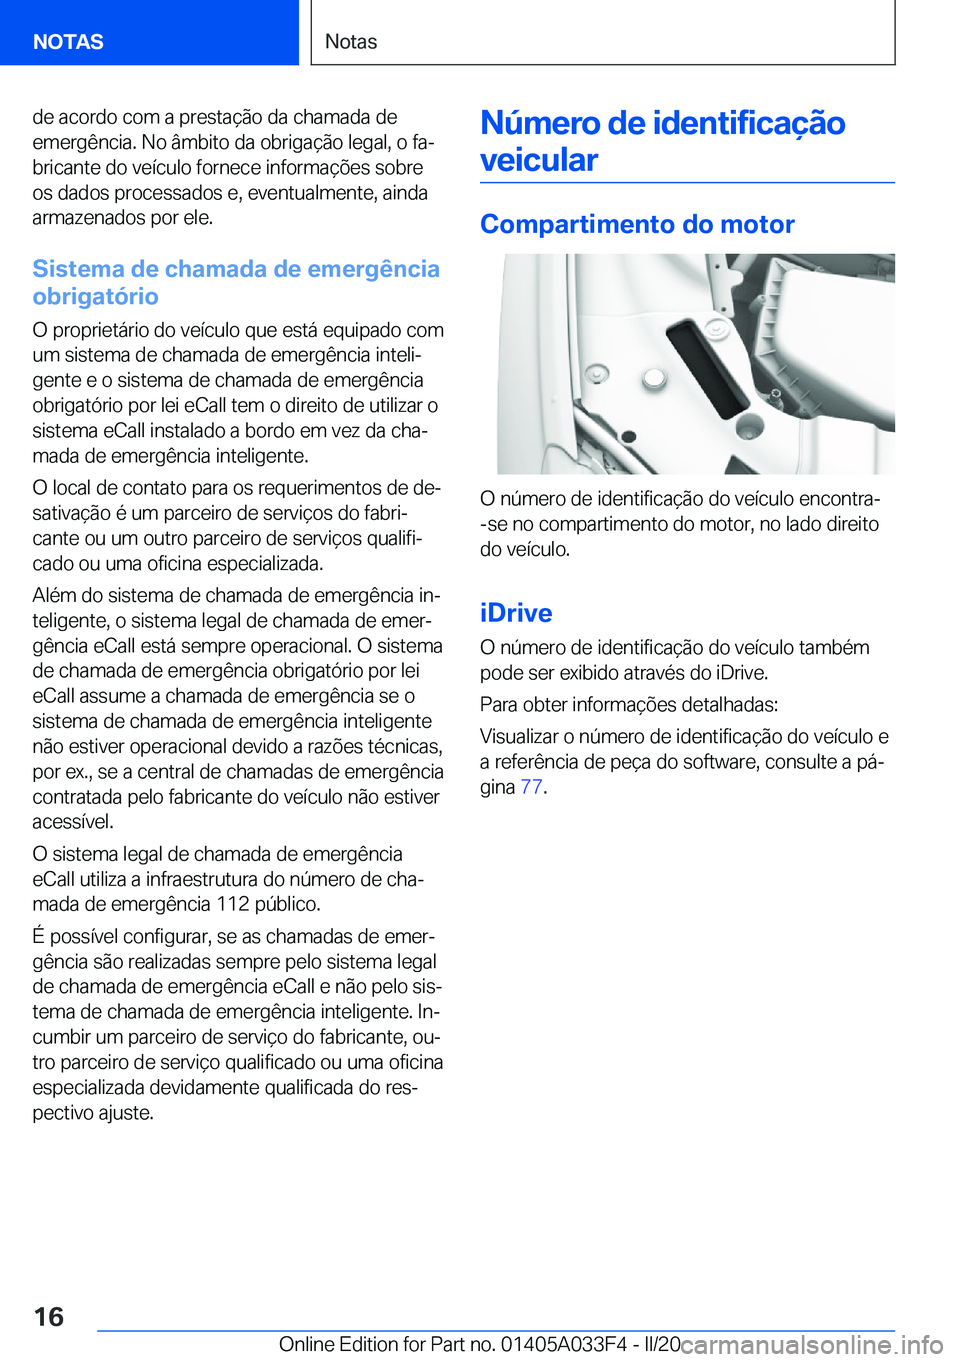 BMW X5 M 2020  Manual do condutor (in Portuguese) �d�e��a�c�o�r�d�o��c�o�m��a��p�r�e�s�t�a�